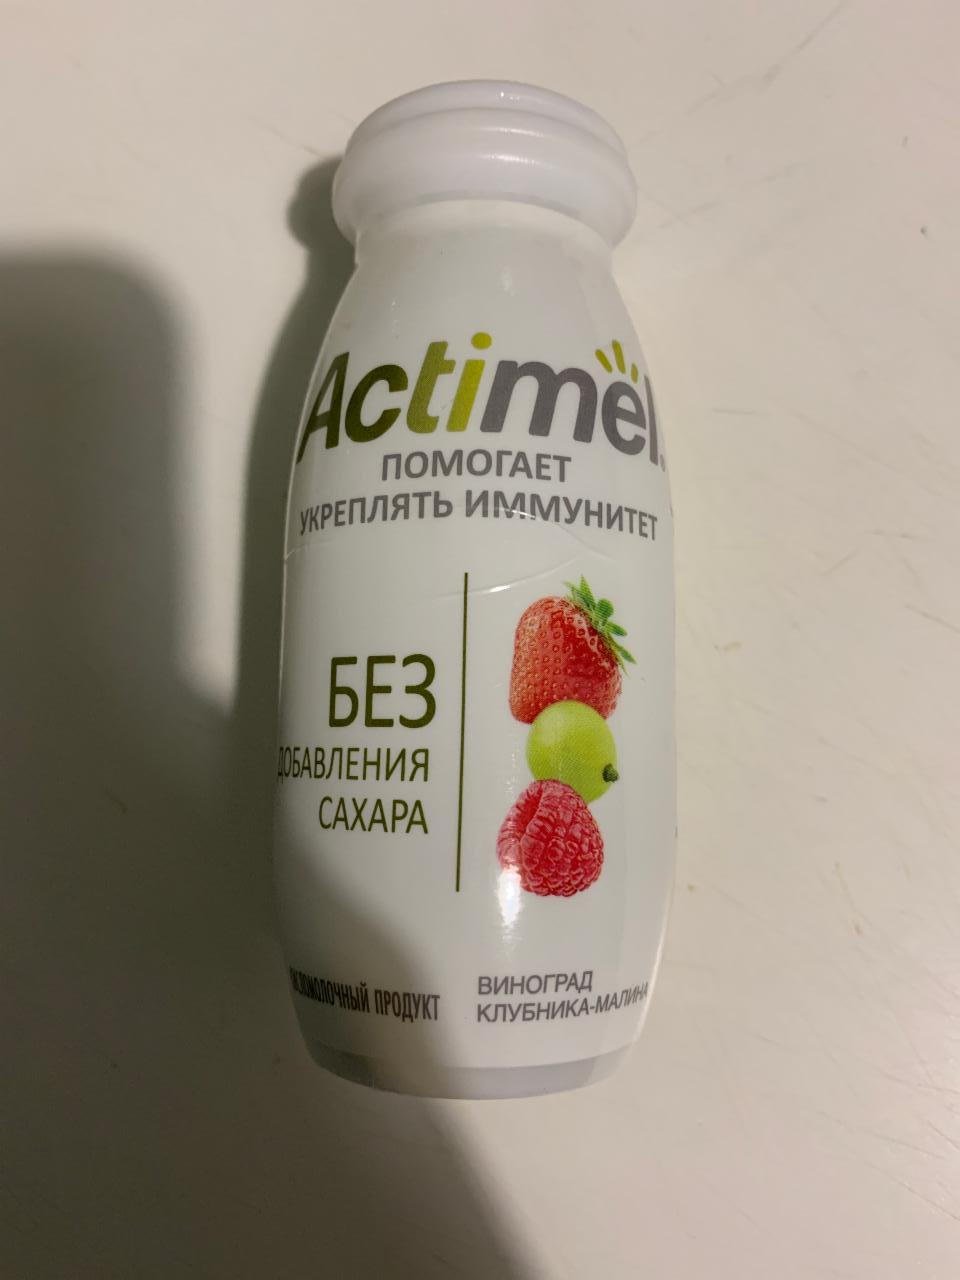 Фото - кисломолочный продукт без сахара виноград клубника малина actimel Актимель